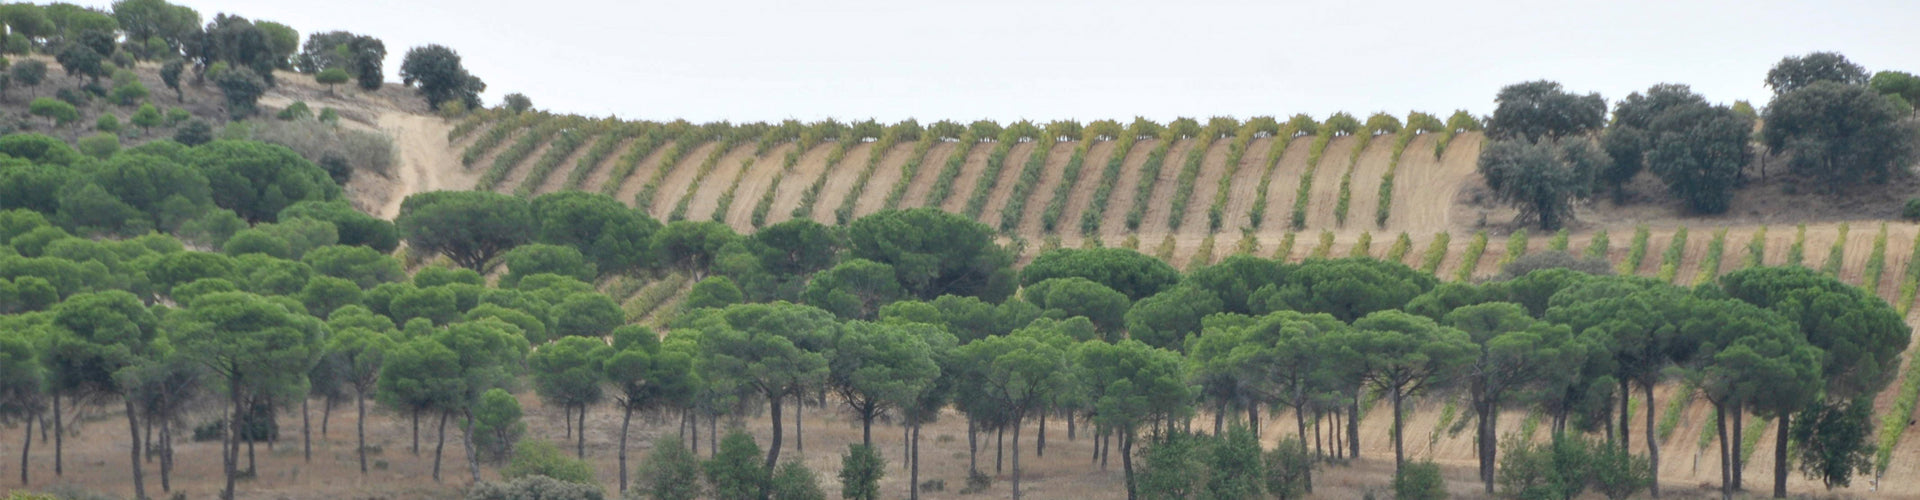 Dehesa La Granja Vineyards in Zamora, Castilla y León